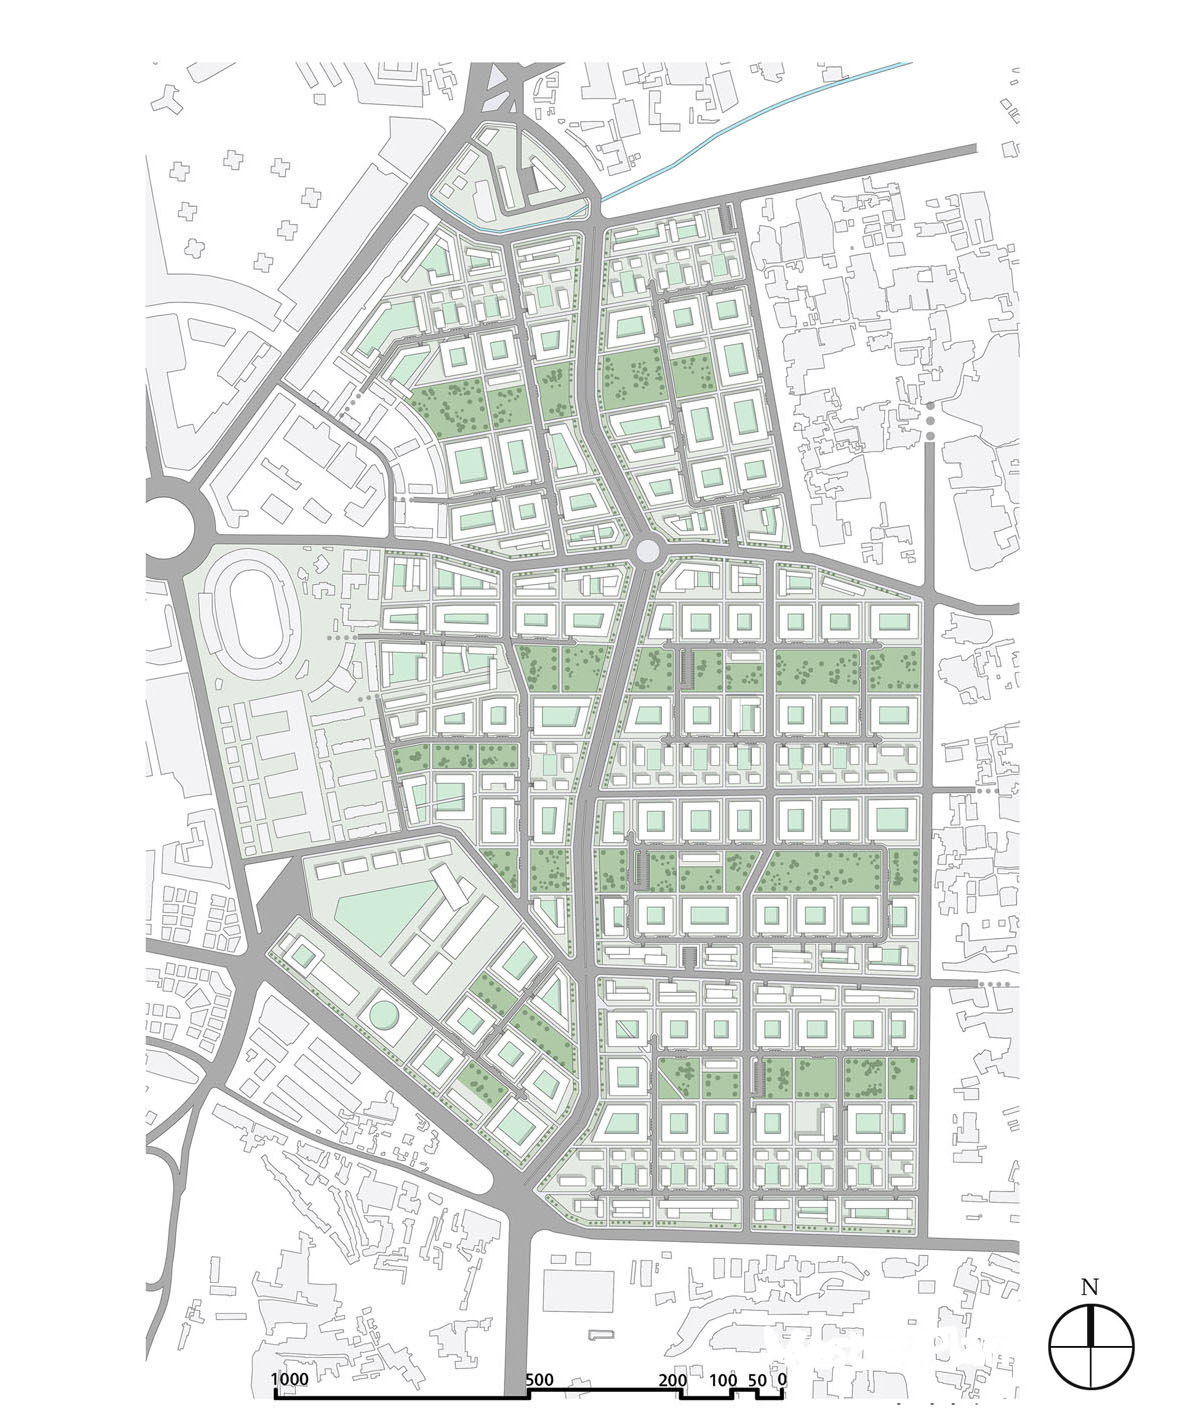 Urban planning Damascus Syria jobar zoning Urban Design